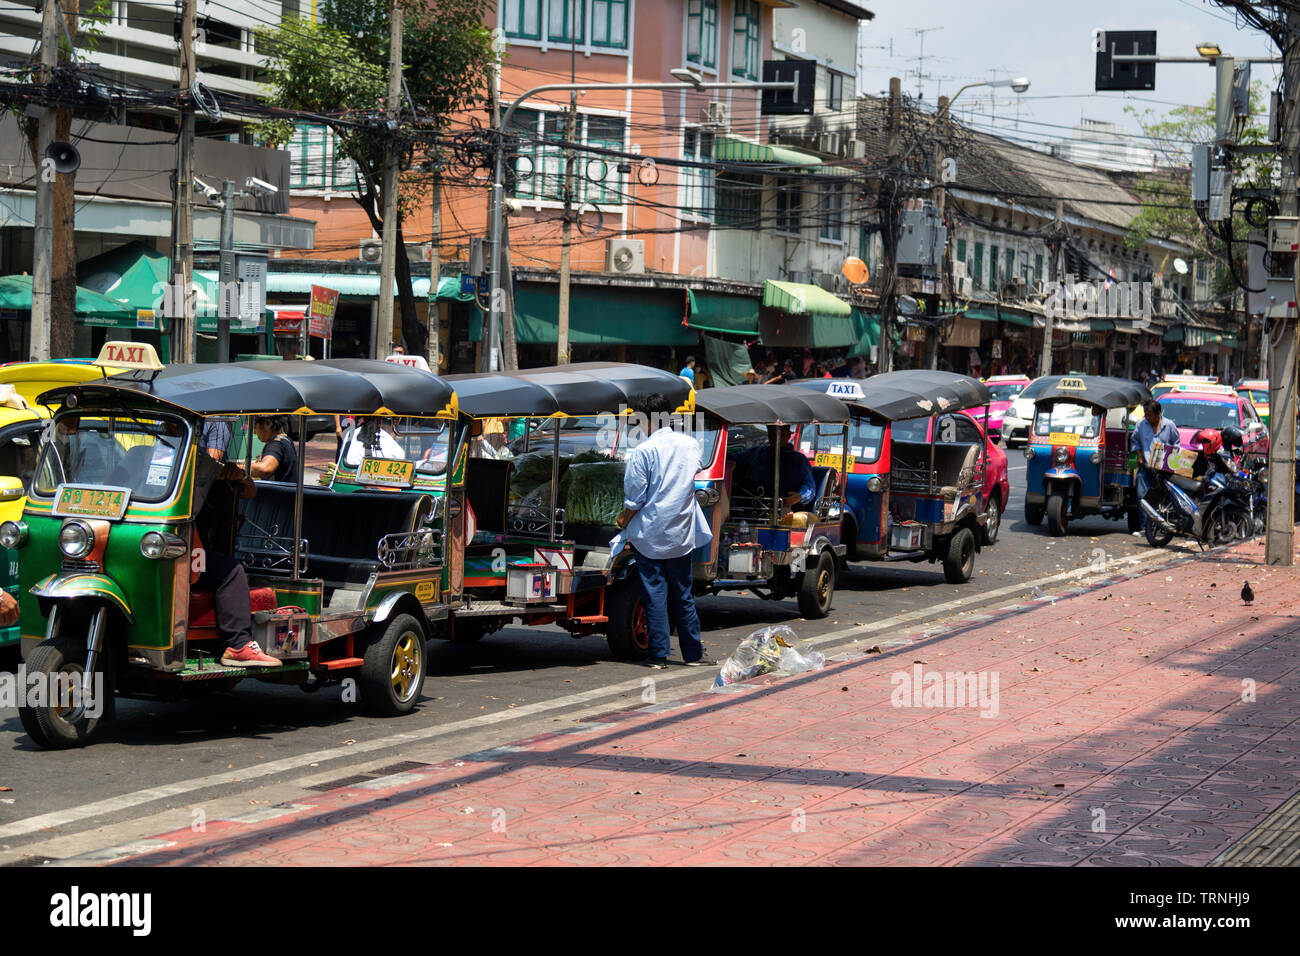 Row of Tuk Tuk's in central Bangkok Stock Photo